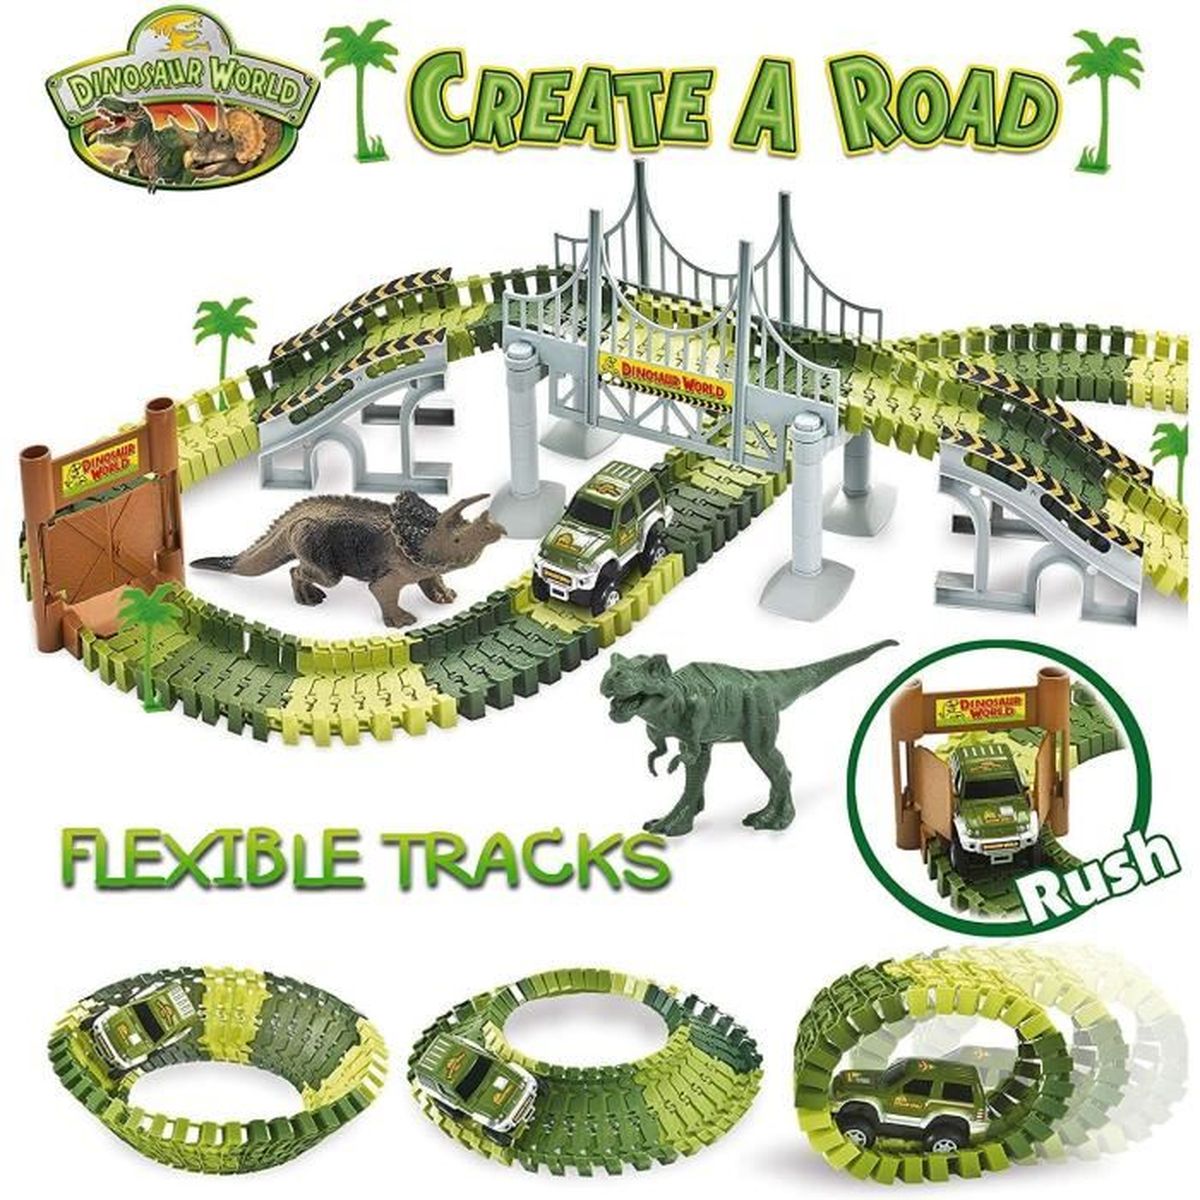 Wishtime Dinosaur Race Track Toys Set Pistes de Course de Voitures de Jeu pour Enfants Dinosaur World Bridge Créer Une Route 142 pièces Voiture Jouet et Piste Flexible Playset Toy Cars 